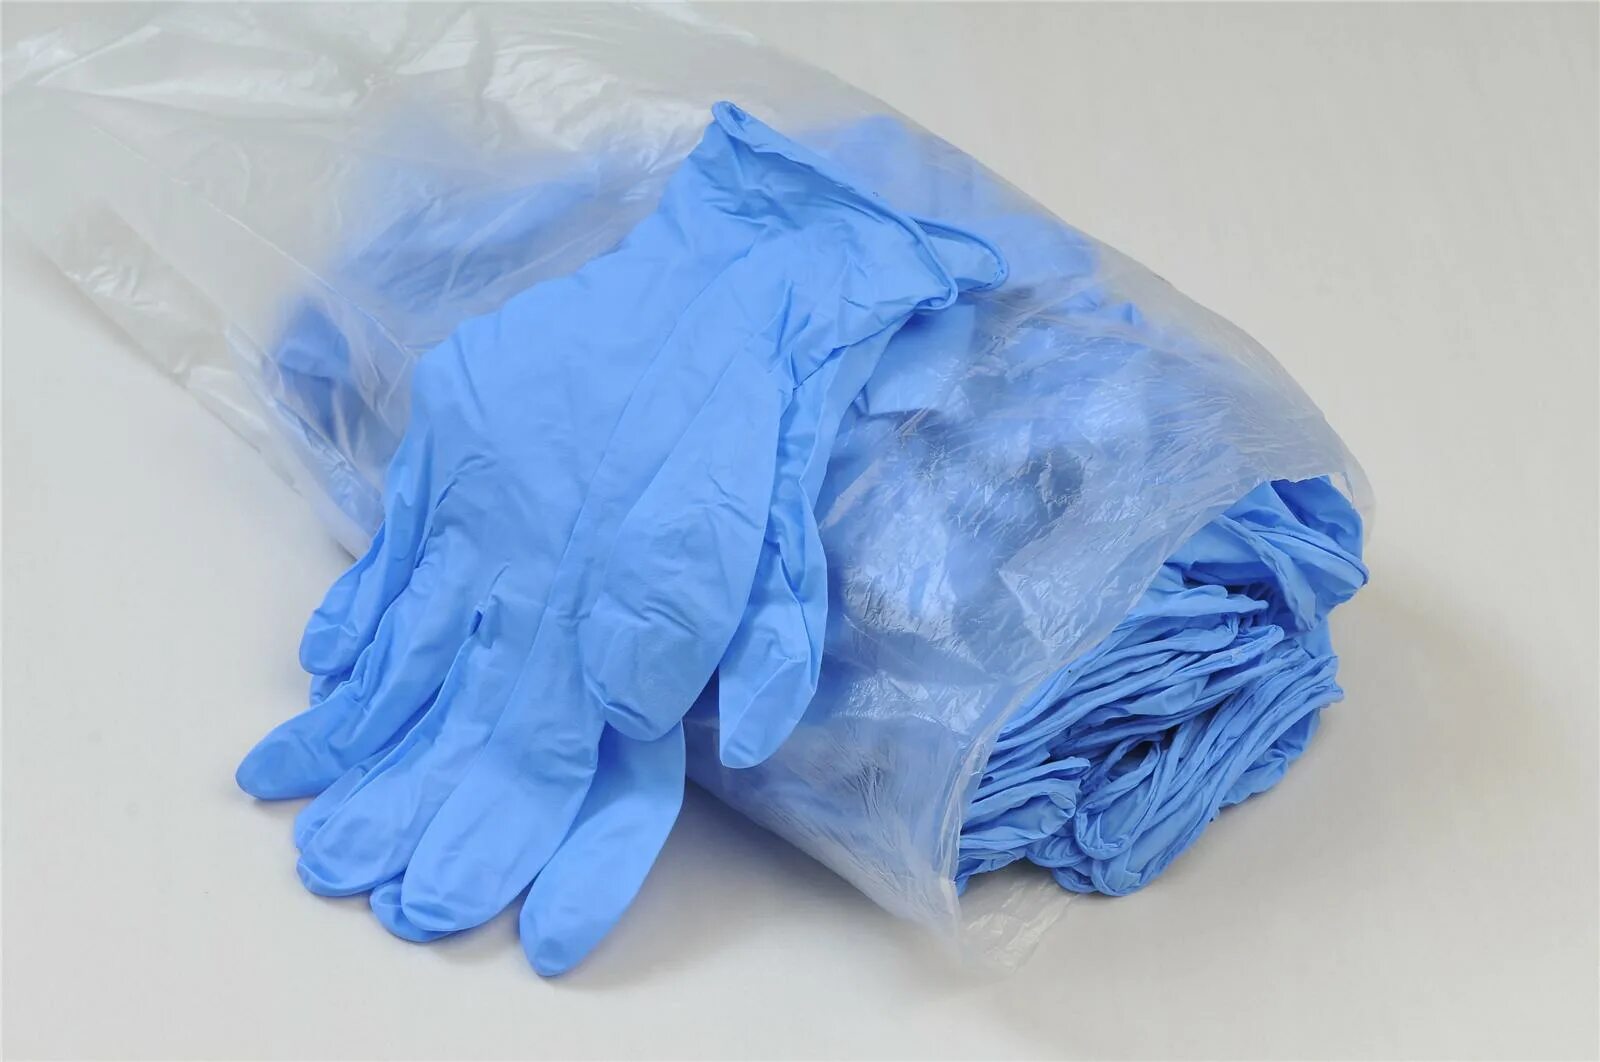 В мешке находится 29 перчаток. Перчатки синие медицинские. Перчатки одноразовые. Медицинские перчатки куча. Перчатки одноразовые куча.